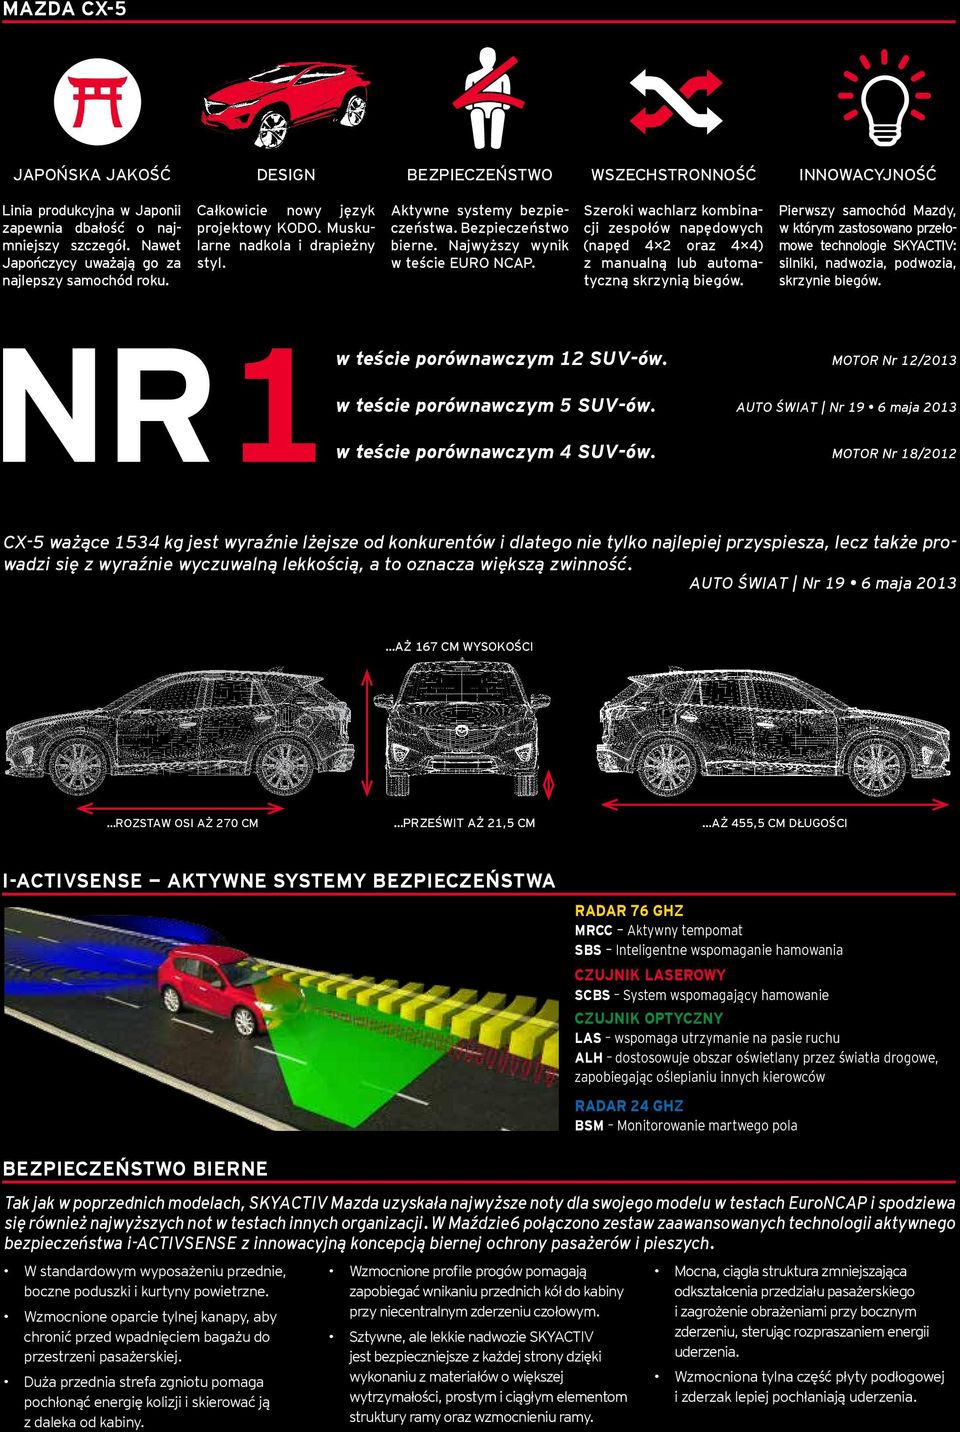 Najwyższy wynik w teś cie EURO NCAP. Szeroki wachlarz kombinacji zespołów napędowych (napęd 4 2 oraz 4 4) z manualną lub automatyczną skrzynią biegów.